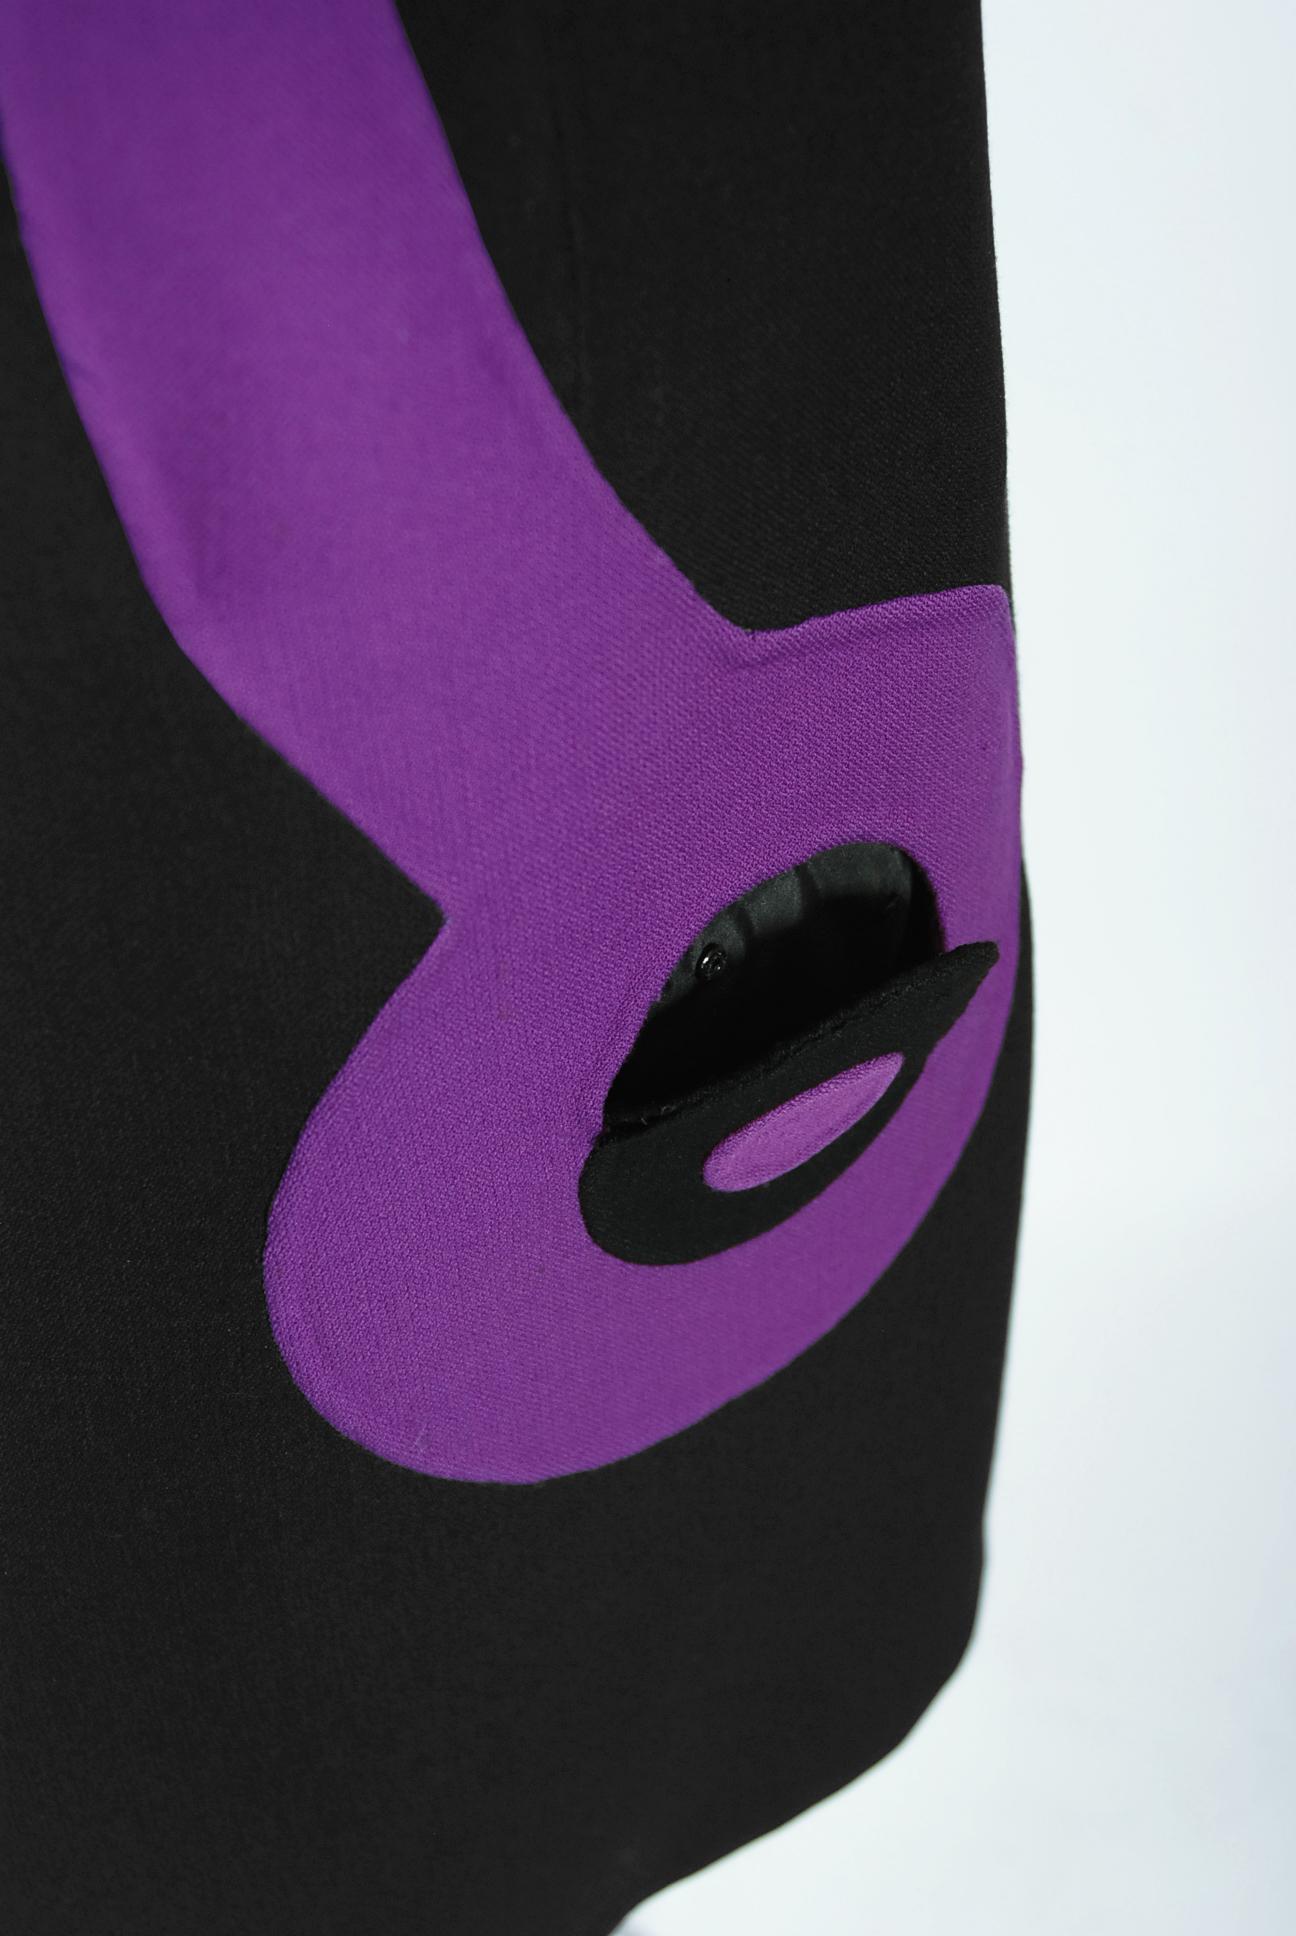 Mila Schön - Robe manteau manteau Mod Target en laine noire et violette, couture italienne, vintage 1969 en vente 2